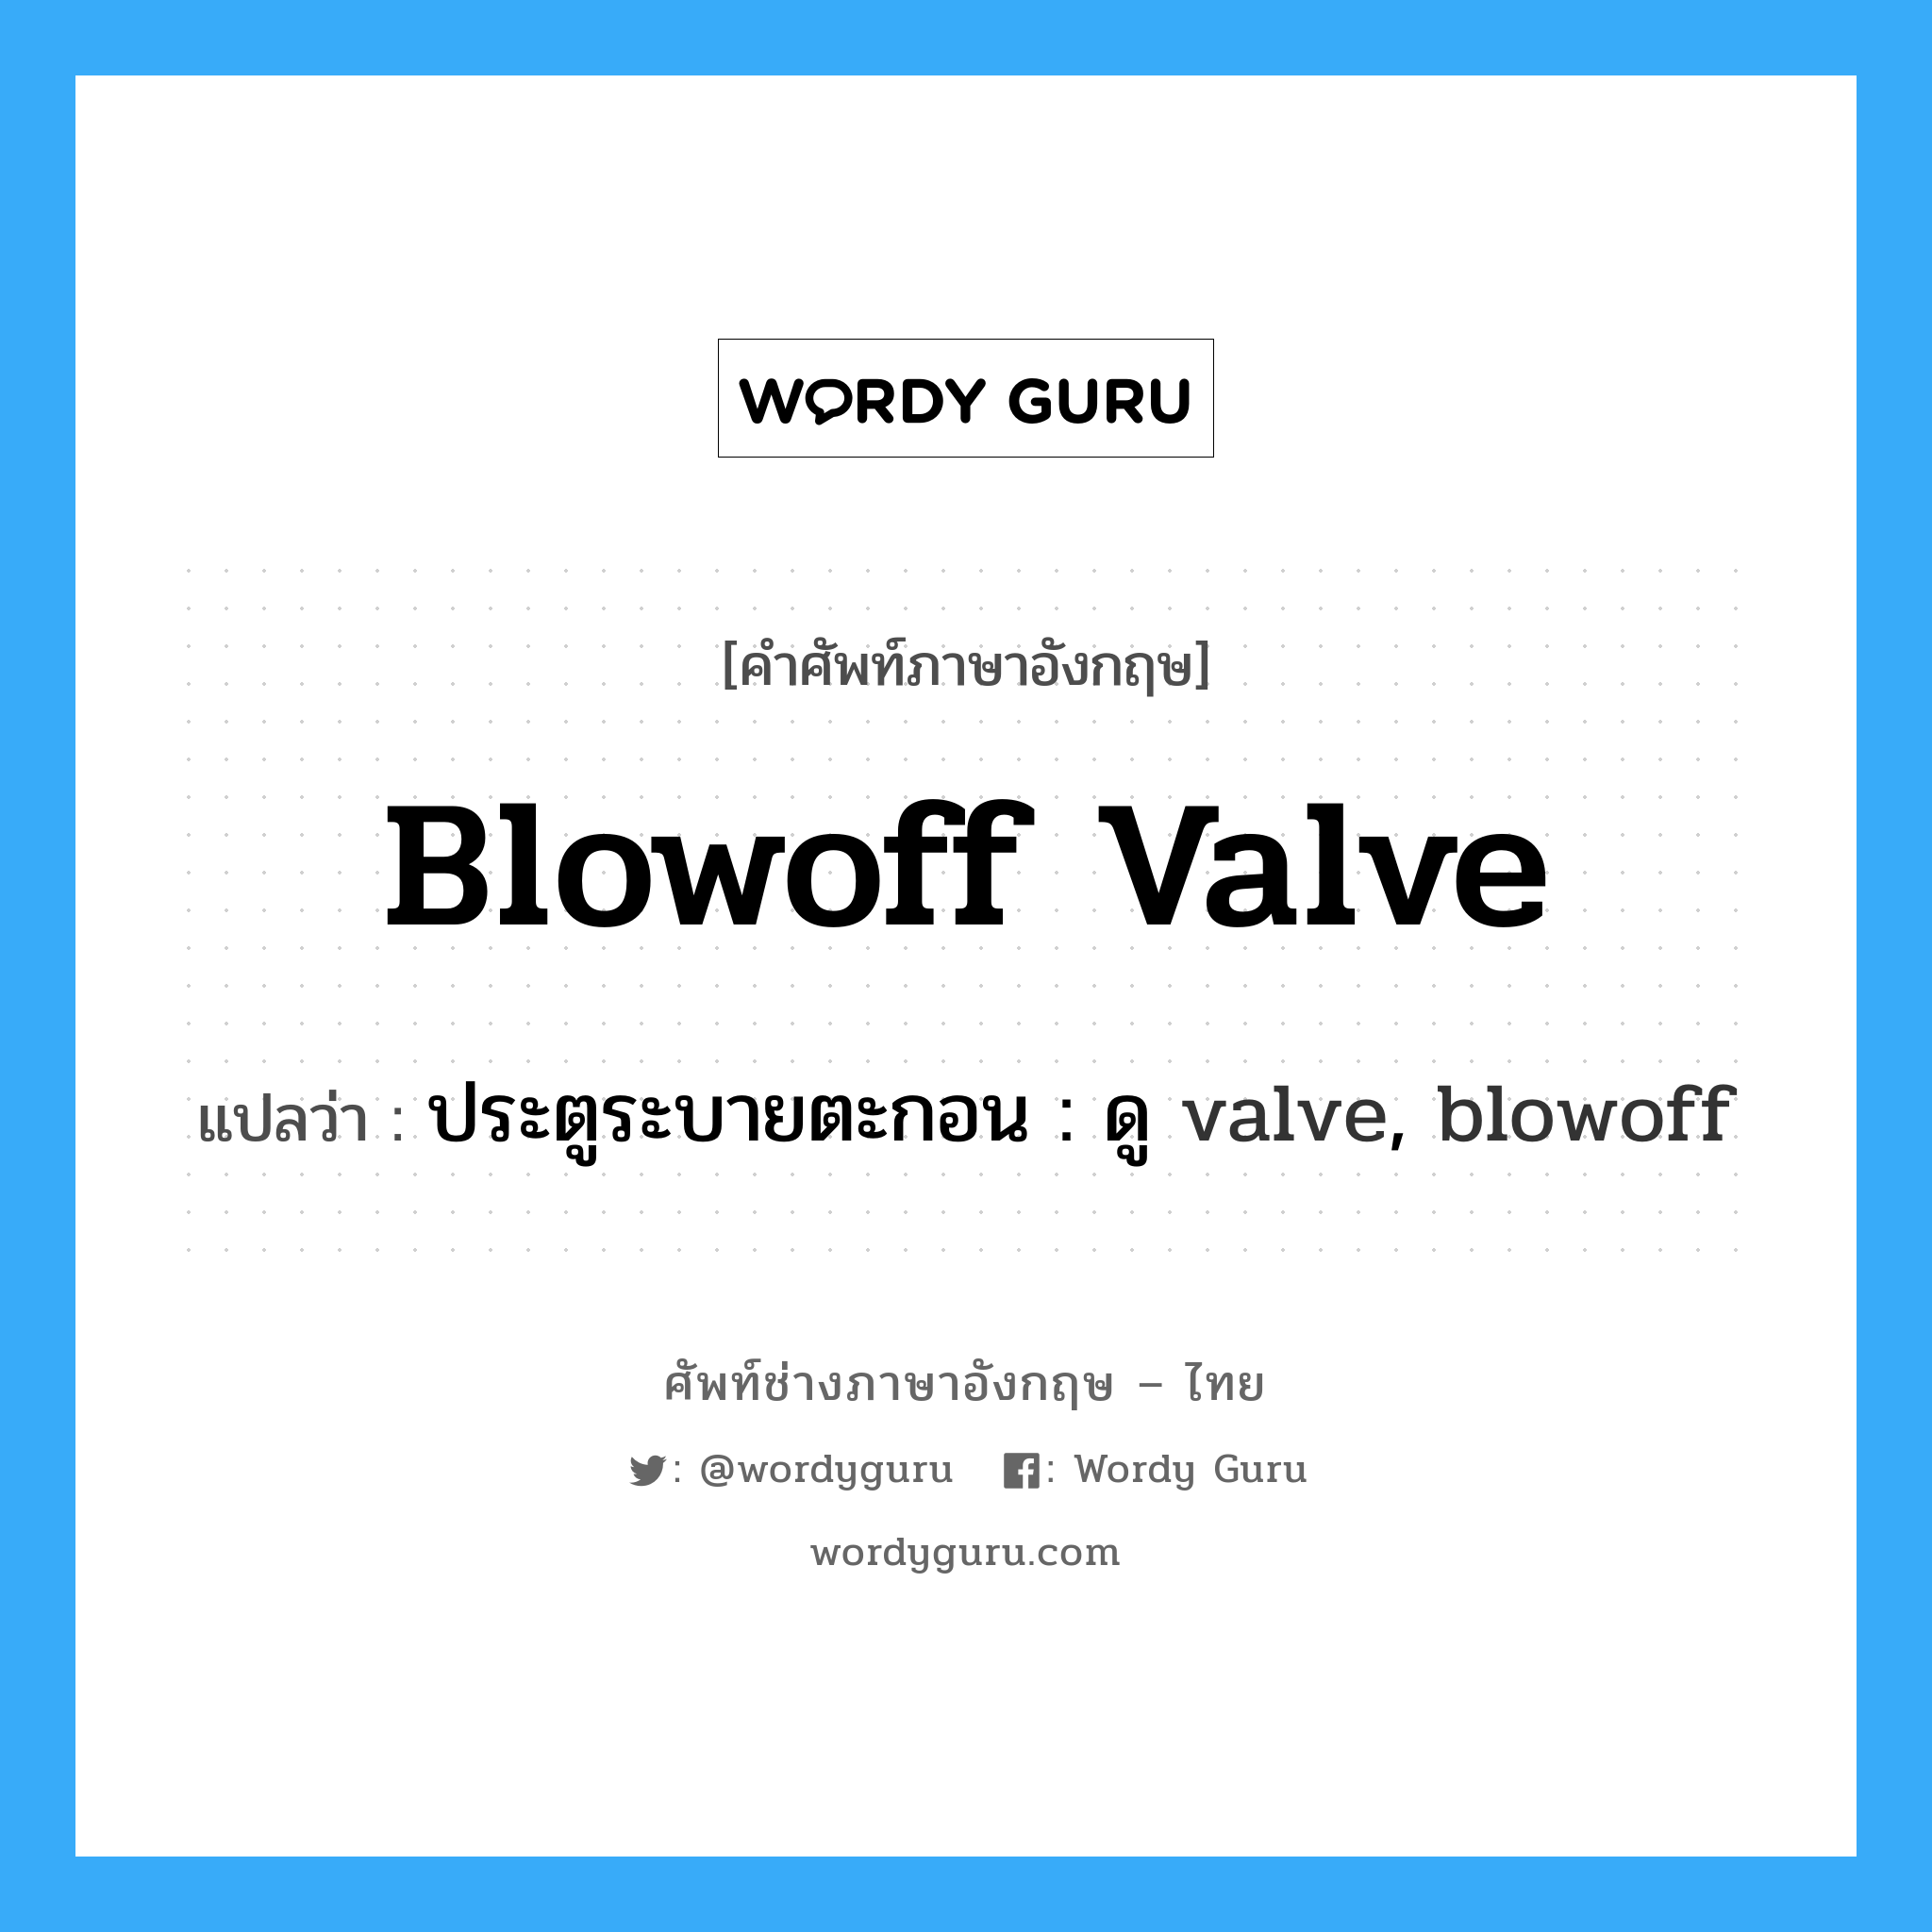 ประตูระบายตะกอน : ดู valve, blowoff ภาษาอังกฤษ?, คำศัพท์ช่างภาษาอังกฤษ - ไทย ประตูระบายตะกอน : ดู valve, blowoff คำศัพท์ภาษาอังกฤษ ประตูระบายตะกอน : ดู valve, blowoff แปลว่า blowoff valve